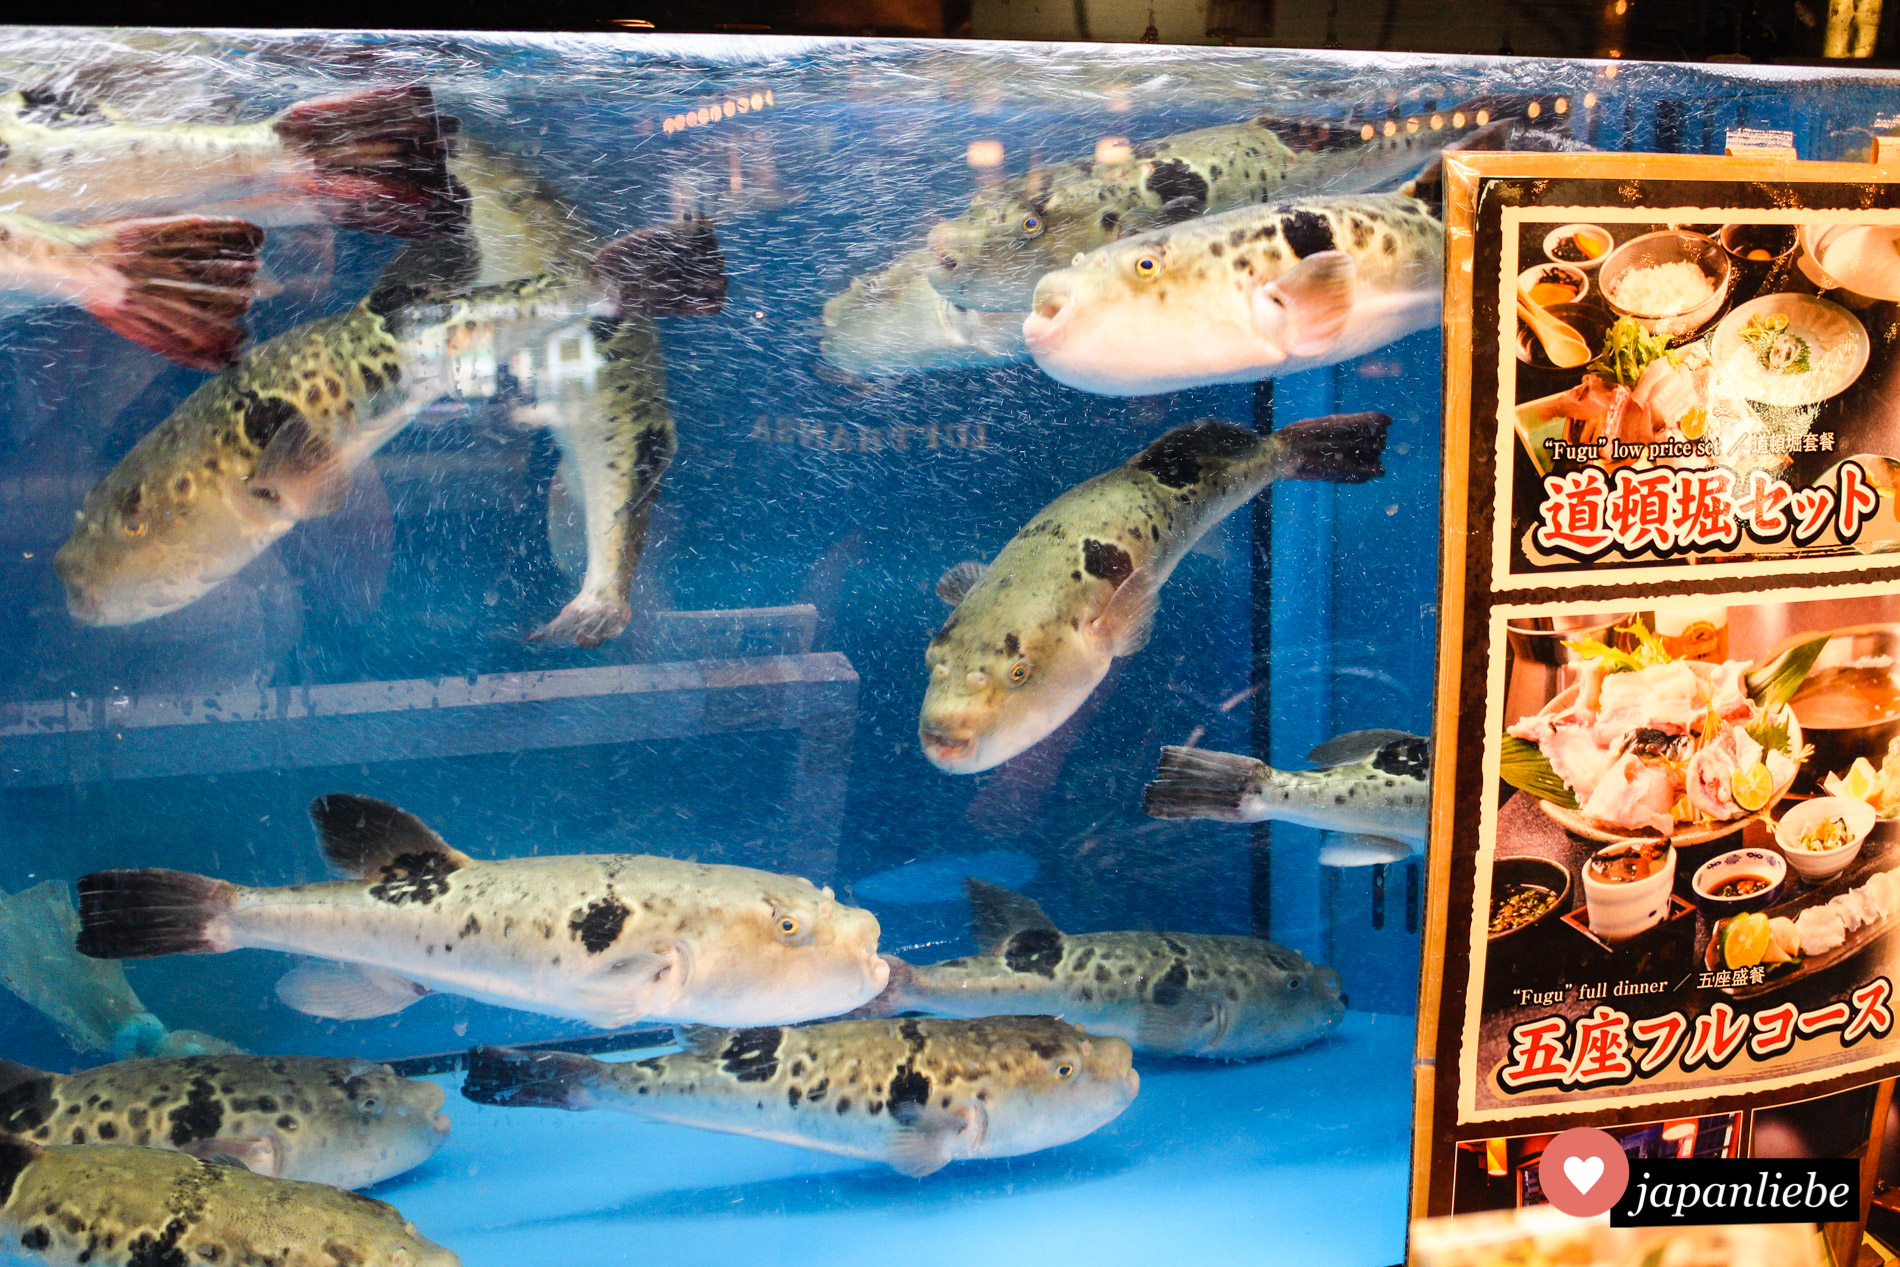 Diese armen Kugelfische harren in einem Aquarium eines fugu-Restaurants aus, bis sie bei einer wagemutigen Person auf dem Teller landen.